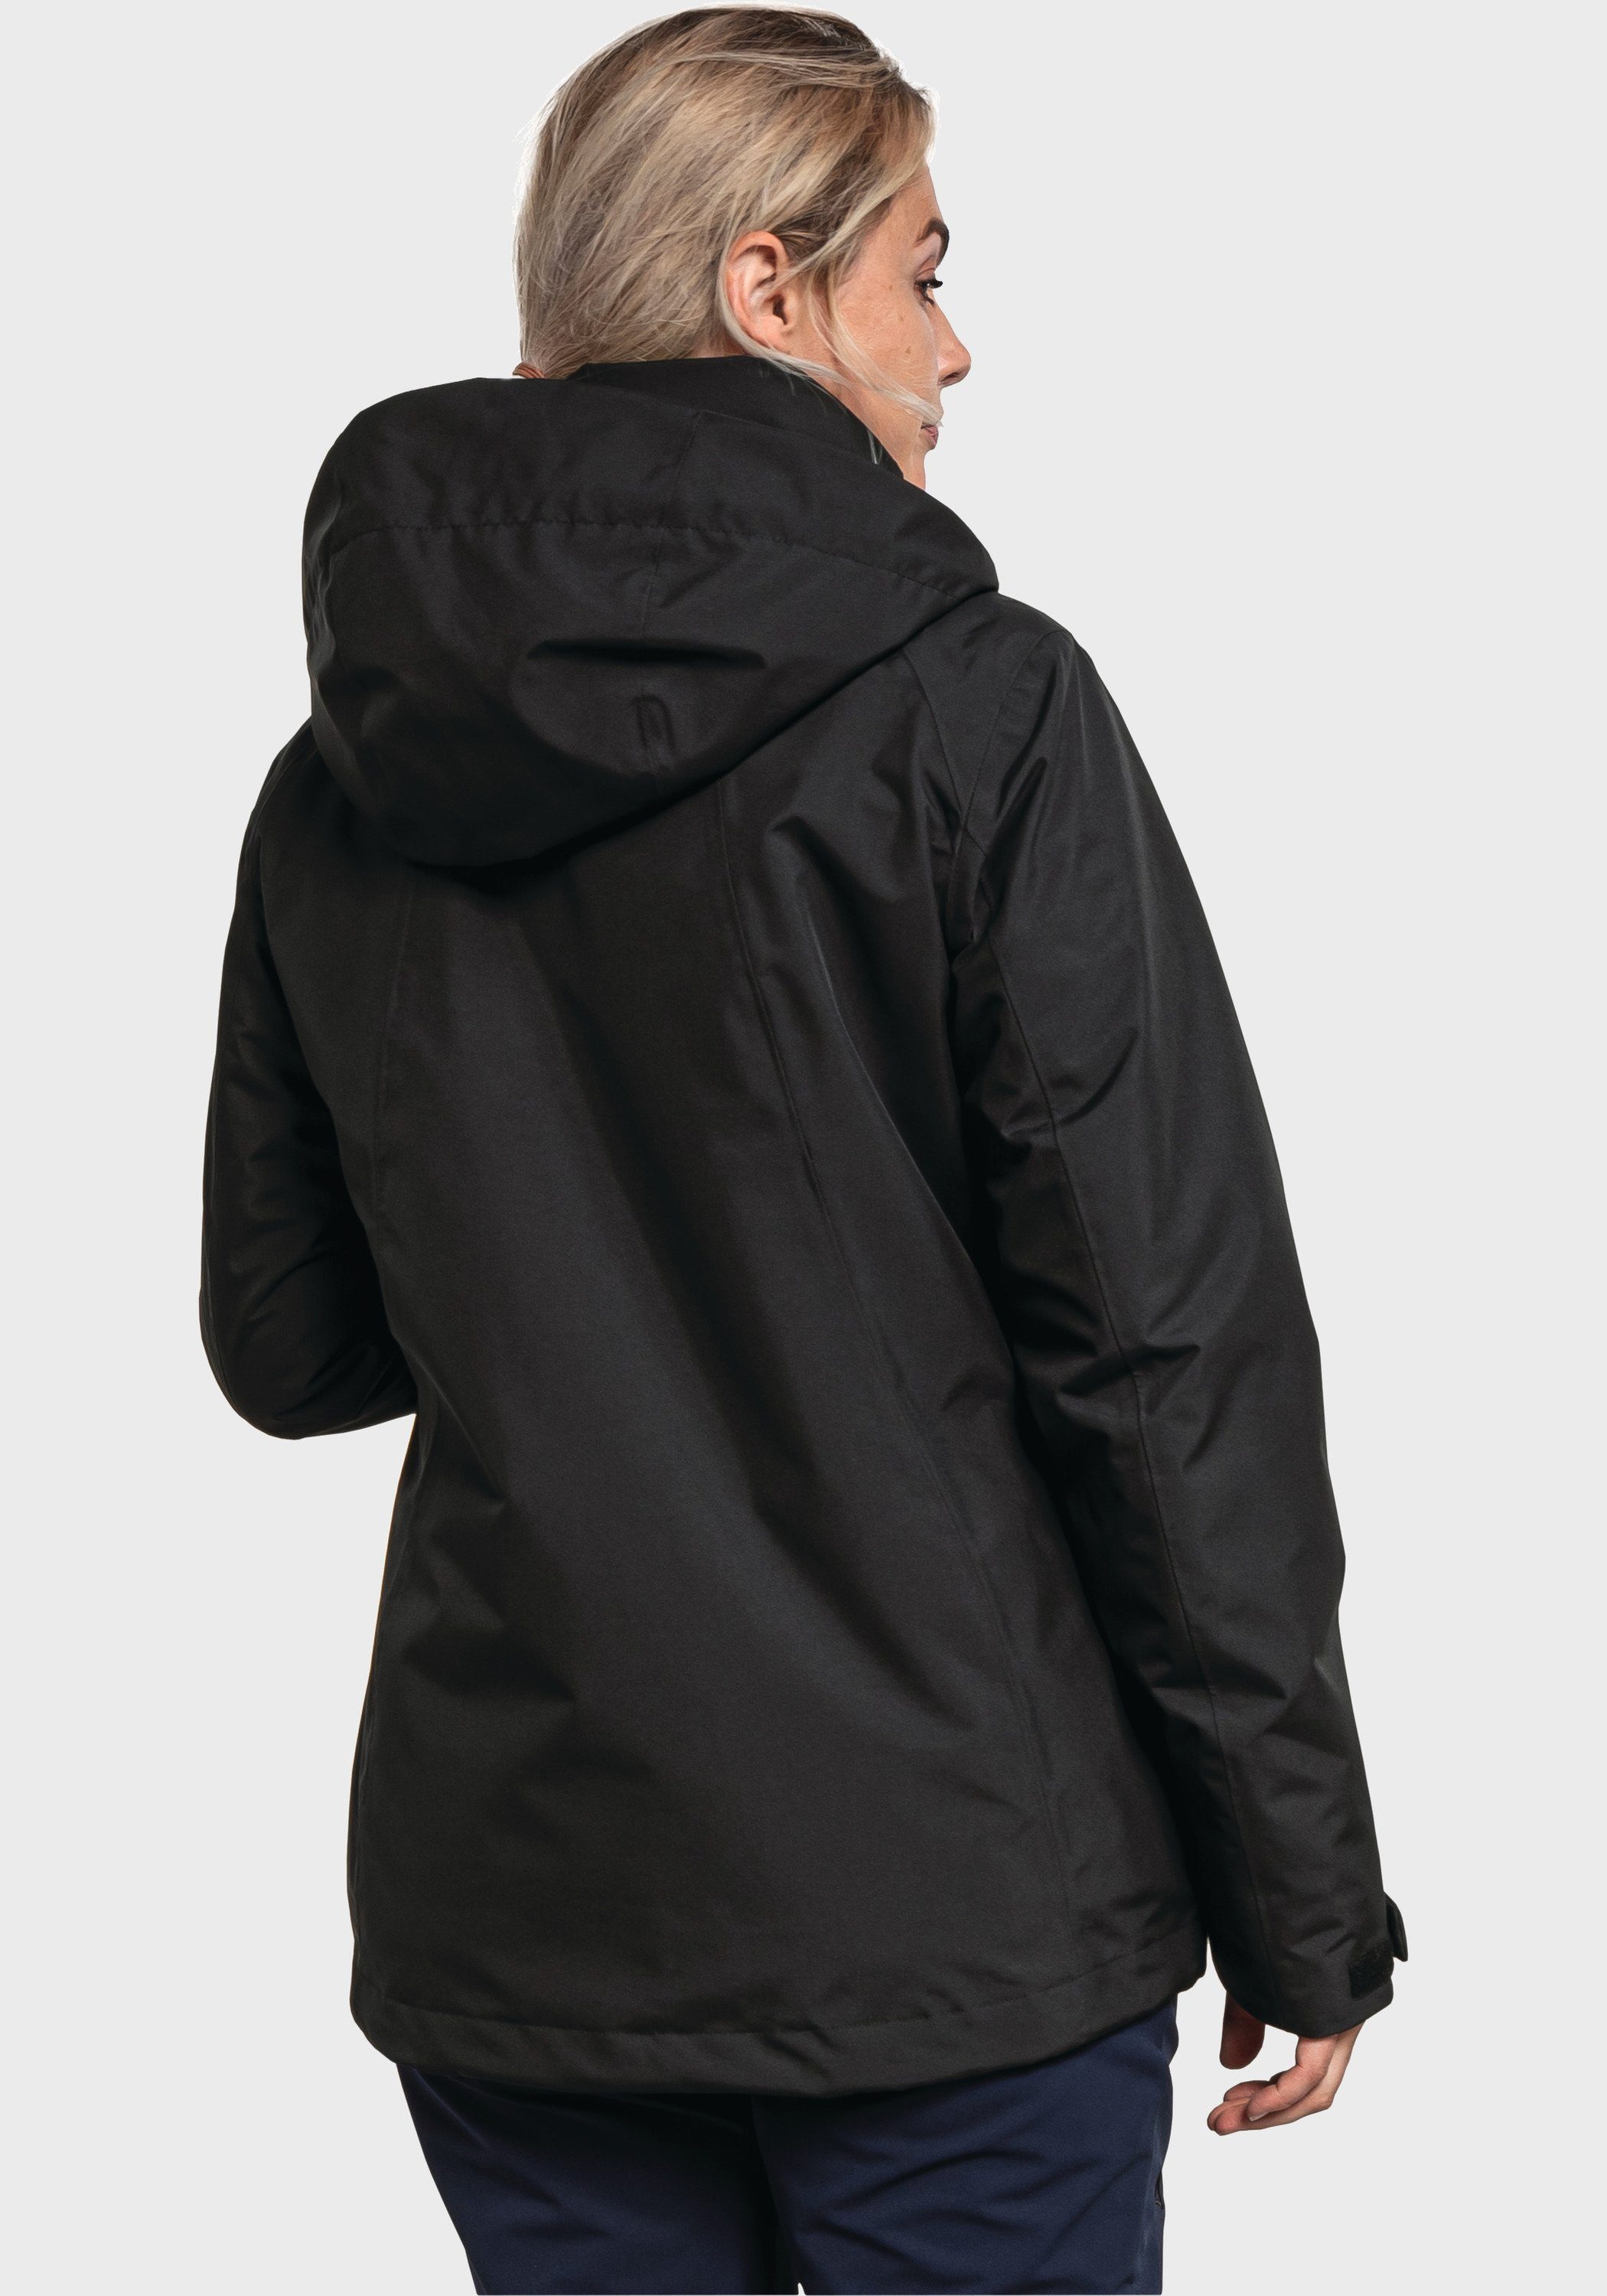 Partinello schwarz Jacket Doppeljacke Schöffel 3in1 L